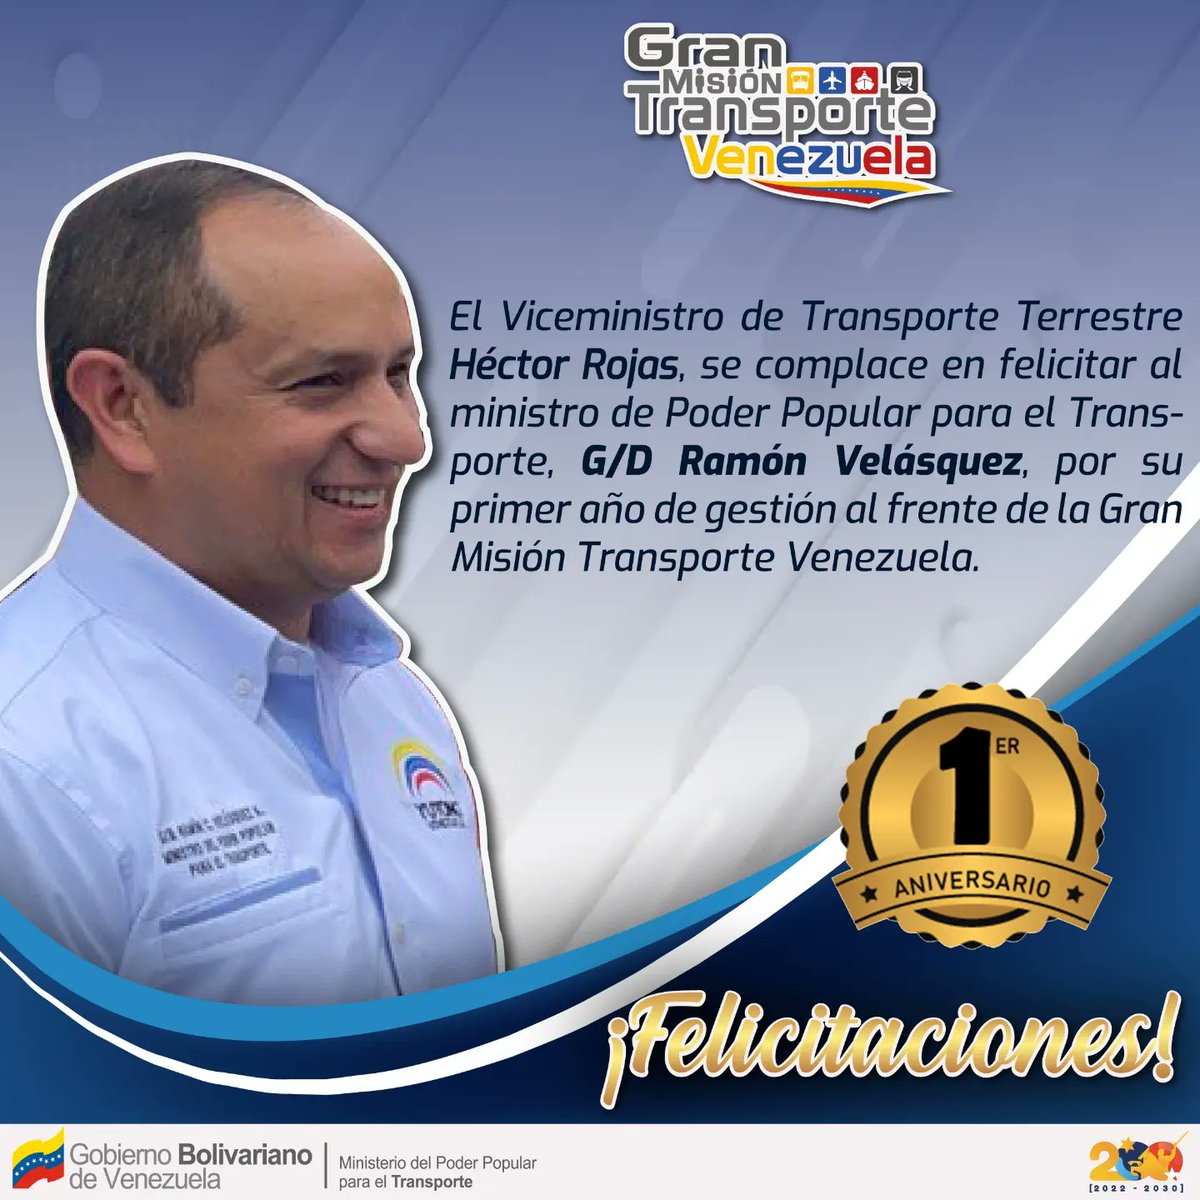 Este #16May tengo el agrado de felicitar al Ministro de Transporte, @rvaraguayan, en su primer año de gestión liderando la #GMTV. Hombre patriota y visionario dedicado en avanzar hacia la Venezuela Potencia en materia del transporte multimodal 🚌🚉⛴️✈️🇻🇪
#PasajeDigital